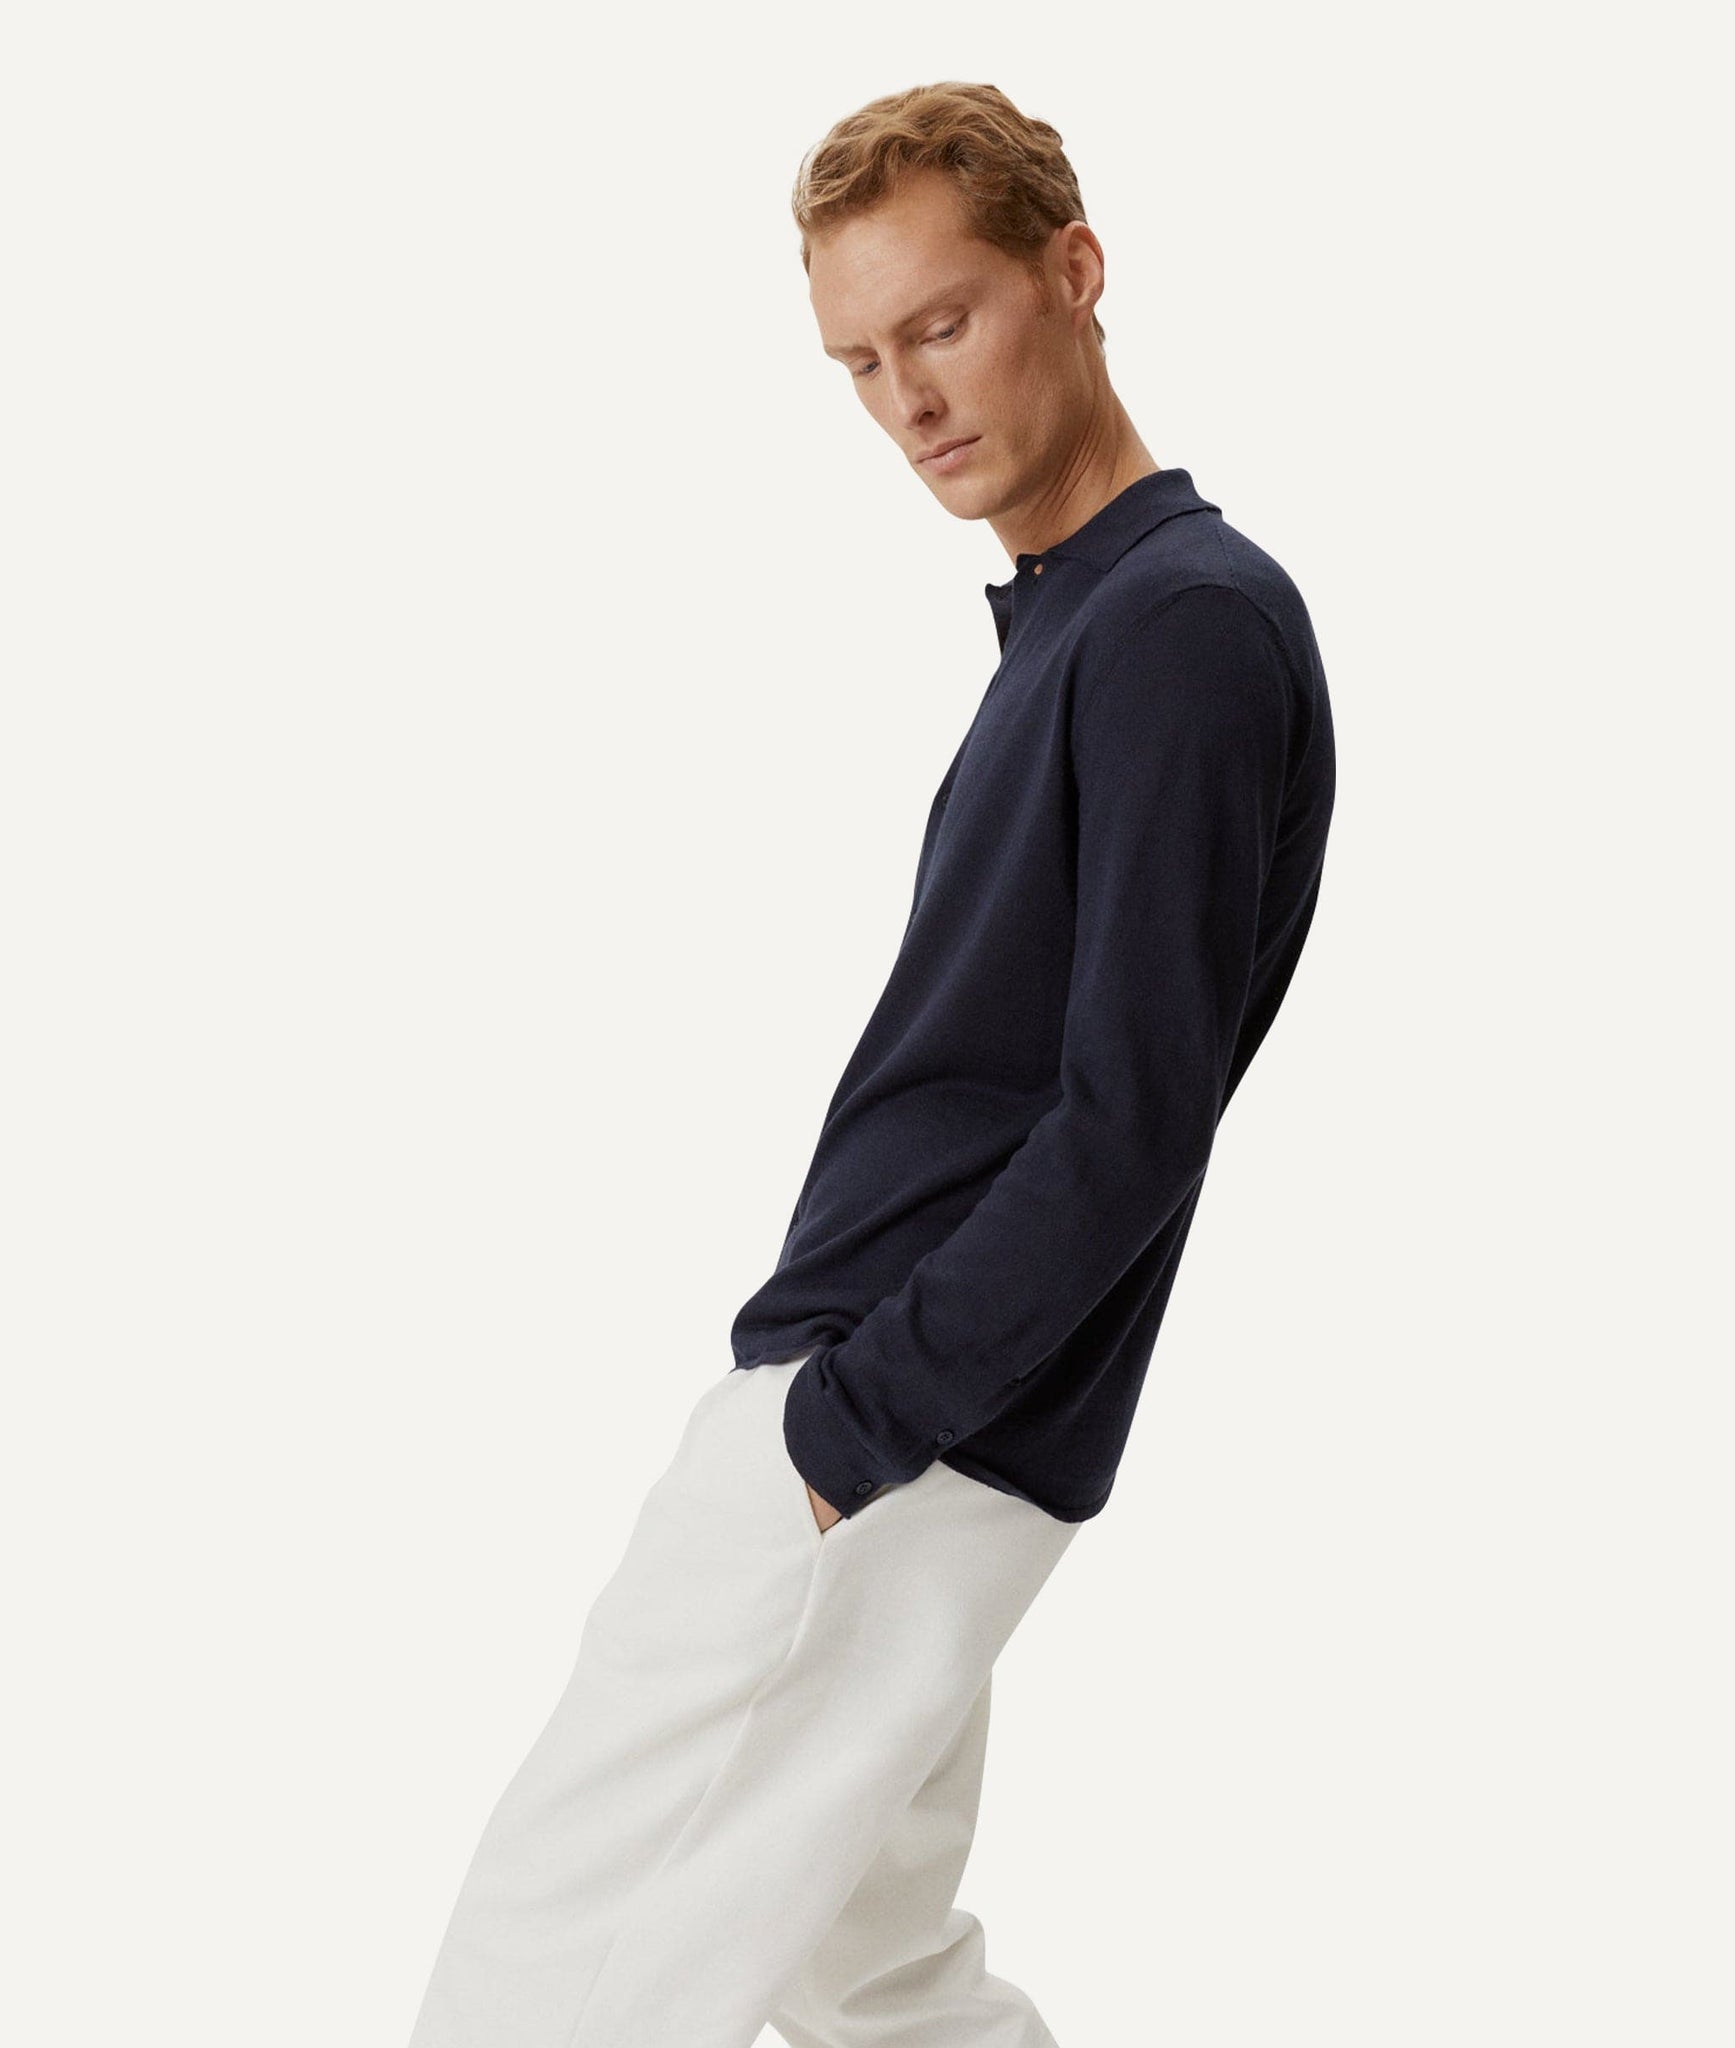 The Linen Cotton Knit Shirt - Blue Navy / S